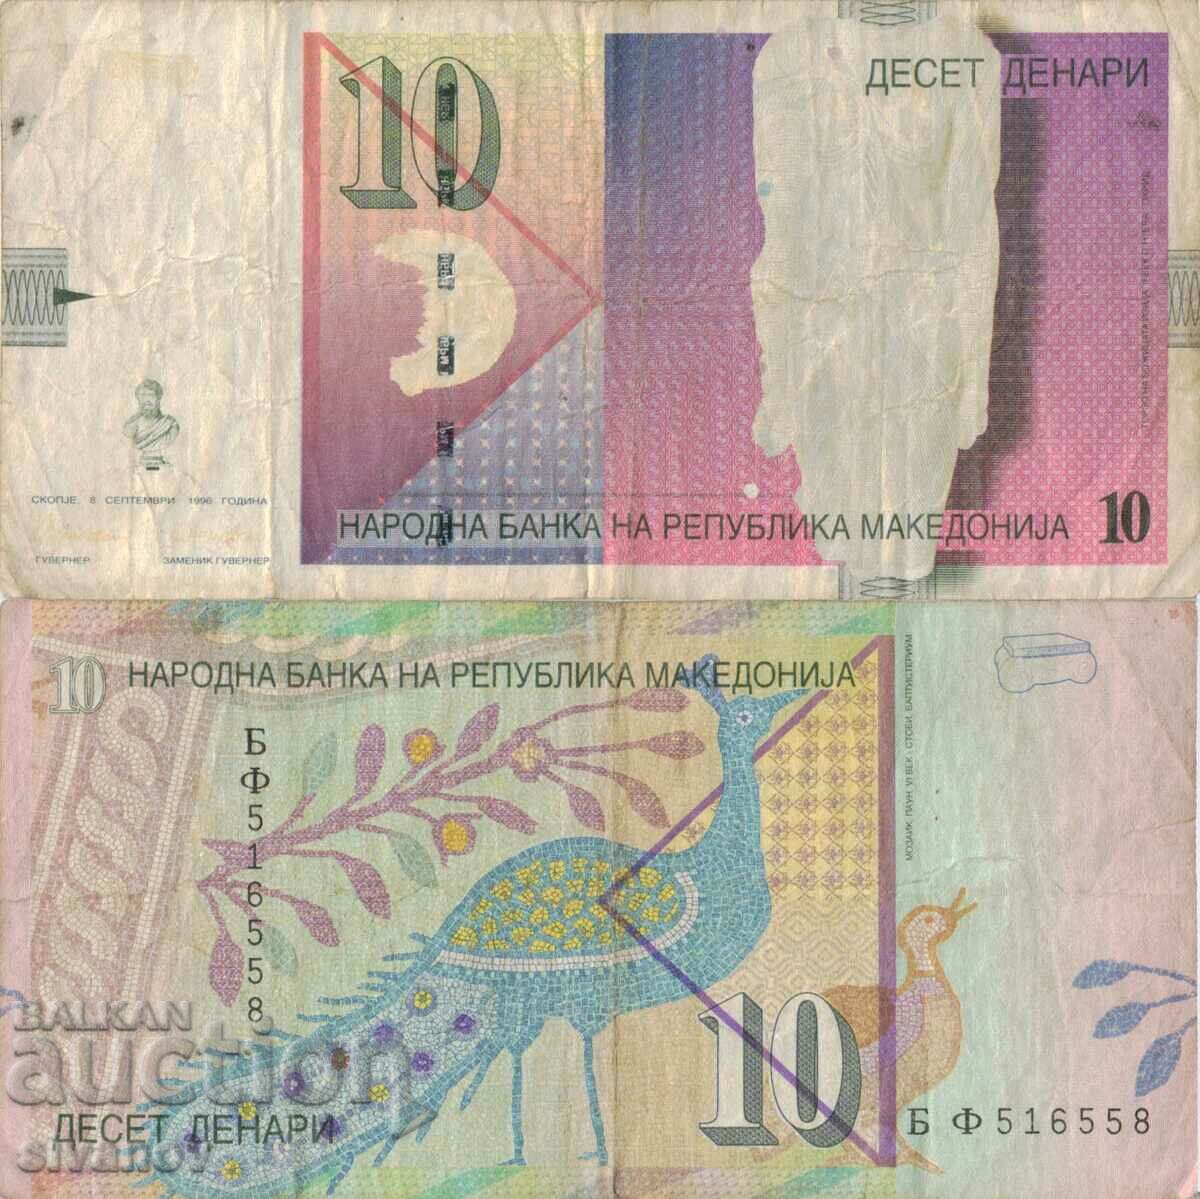 Macedonia 10 denars 1996 banknote #5224